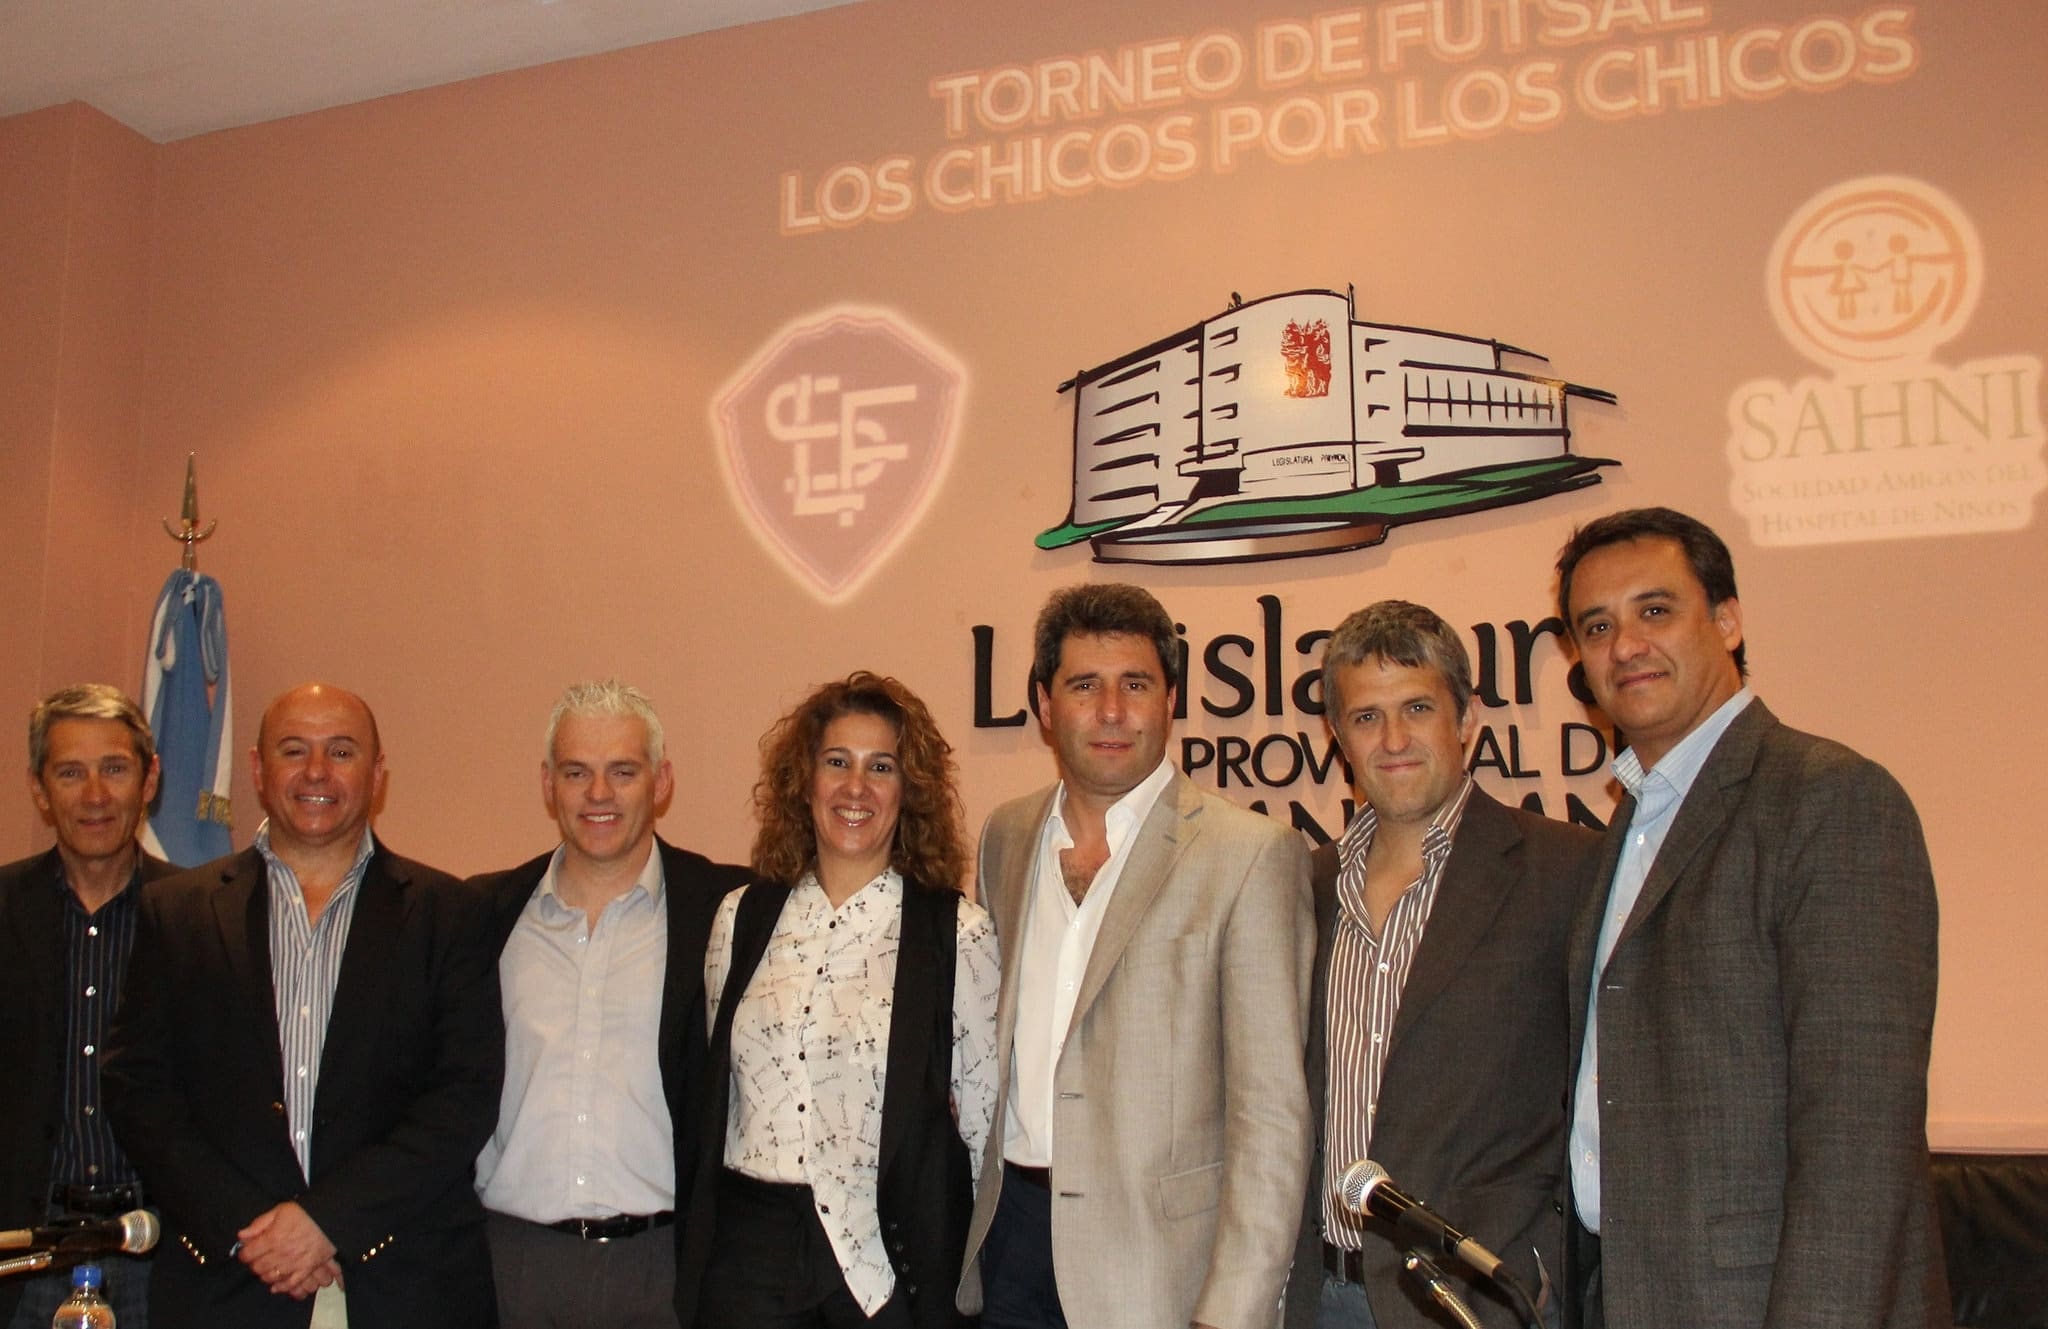 Las autoridades, encabezadas por el Dr. Sergio Uñac, presentaron el Torneo de Futsal "Los Chicos por los Chicos".